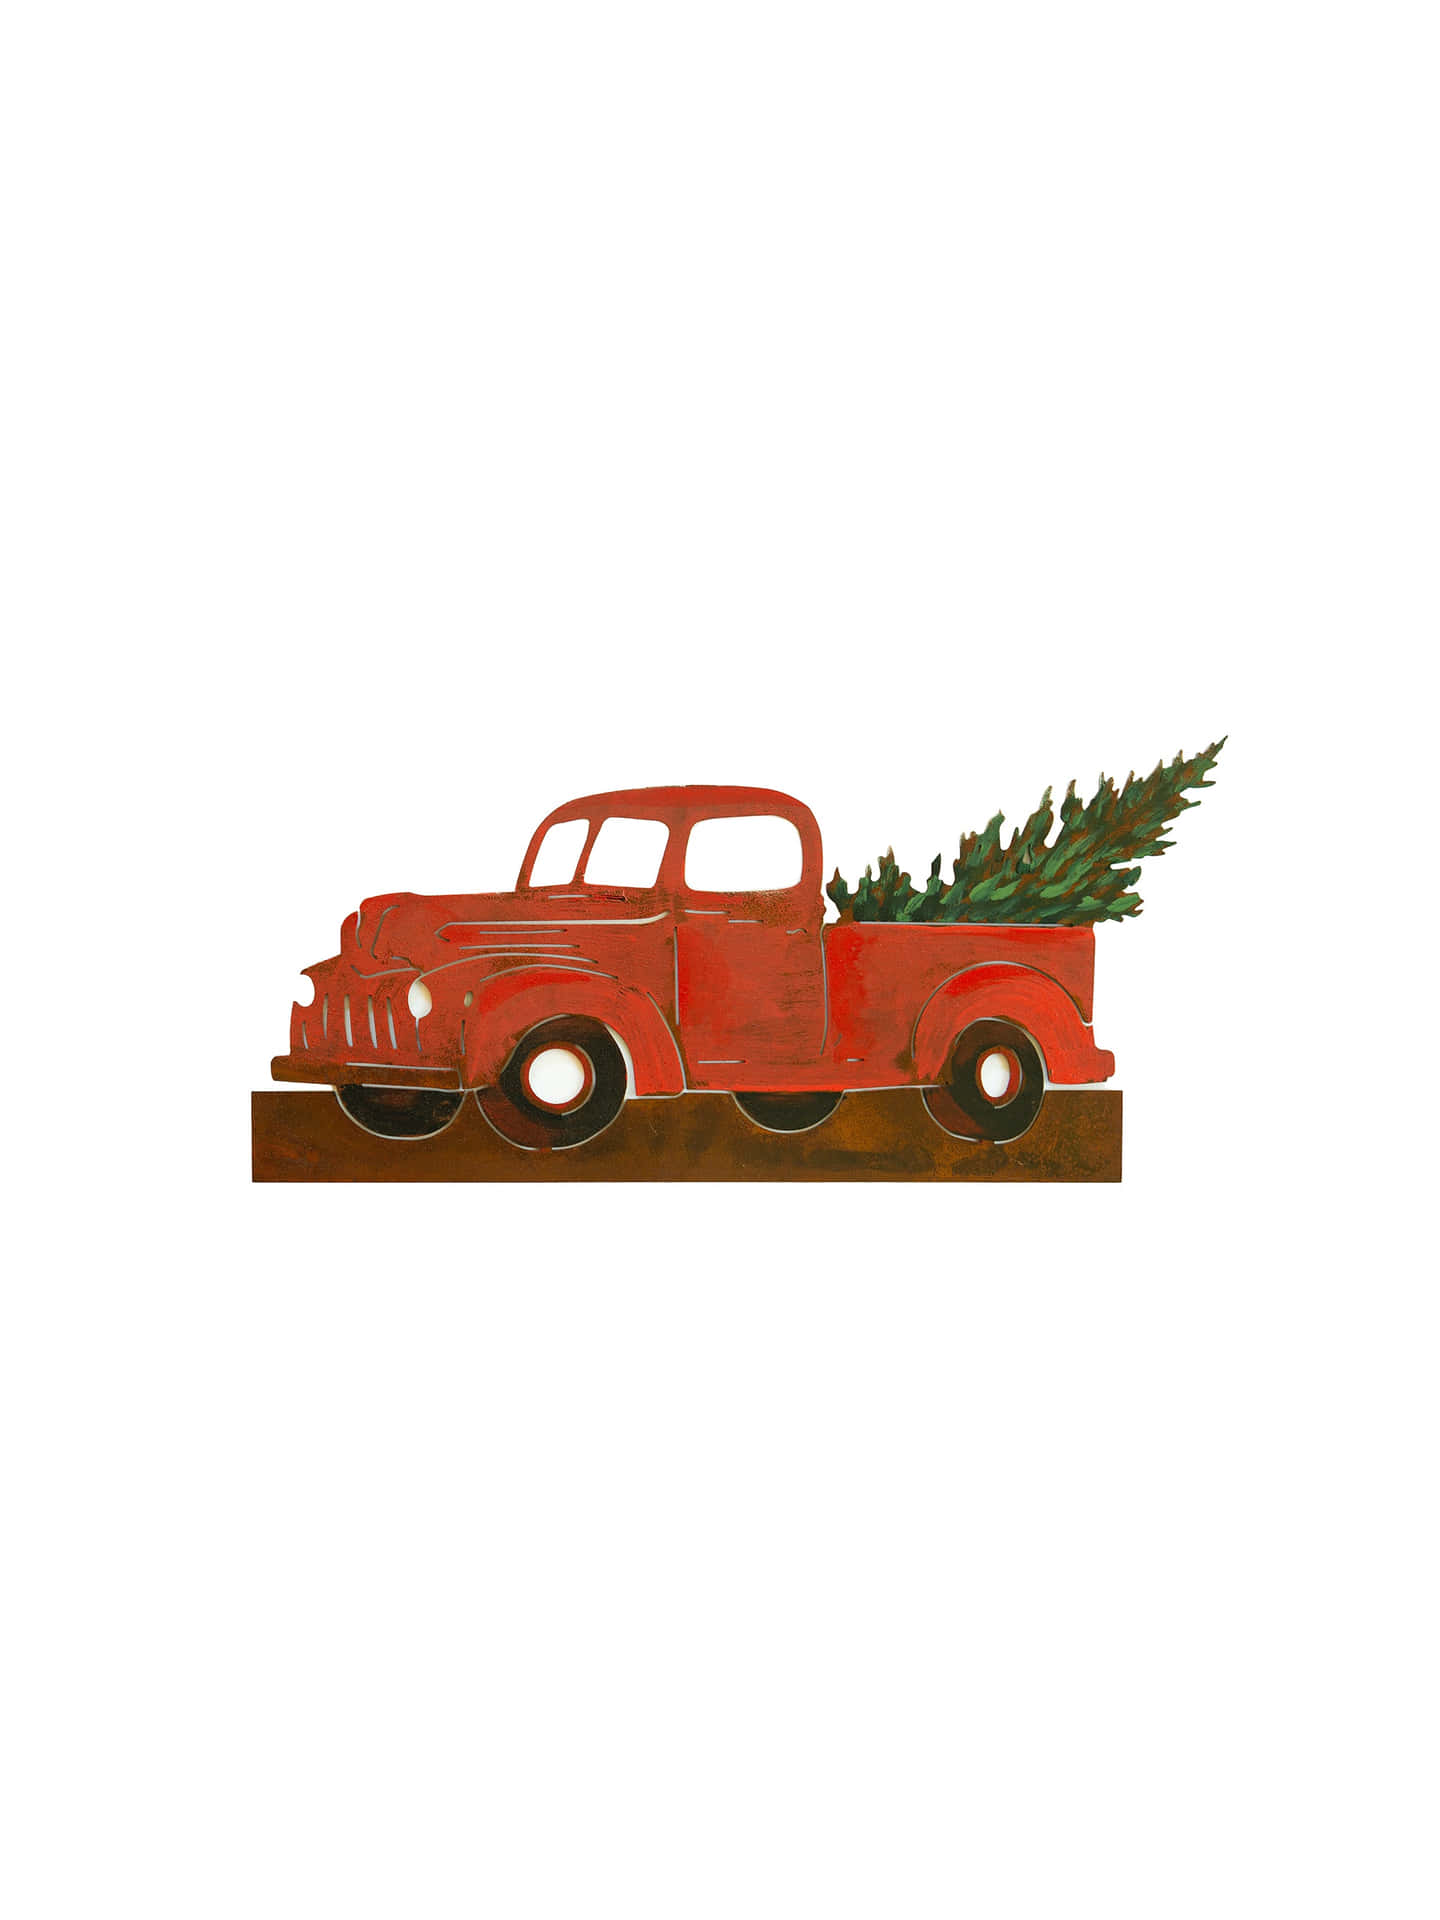 Feiernsie Die Feiertage Mit Diesem Festlichen Weihnachtsmotiv Eines Vintage-trucks. Wallpaper